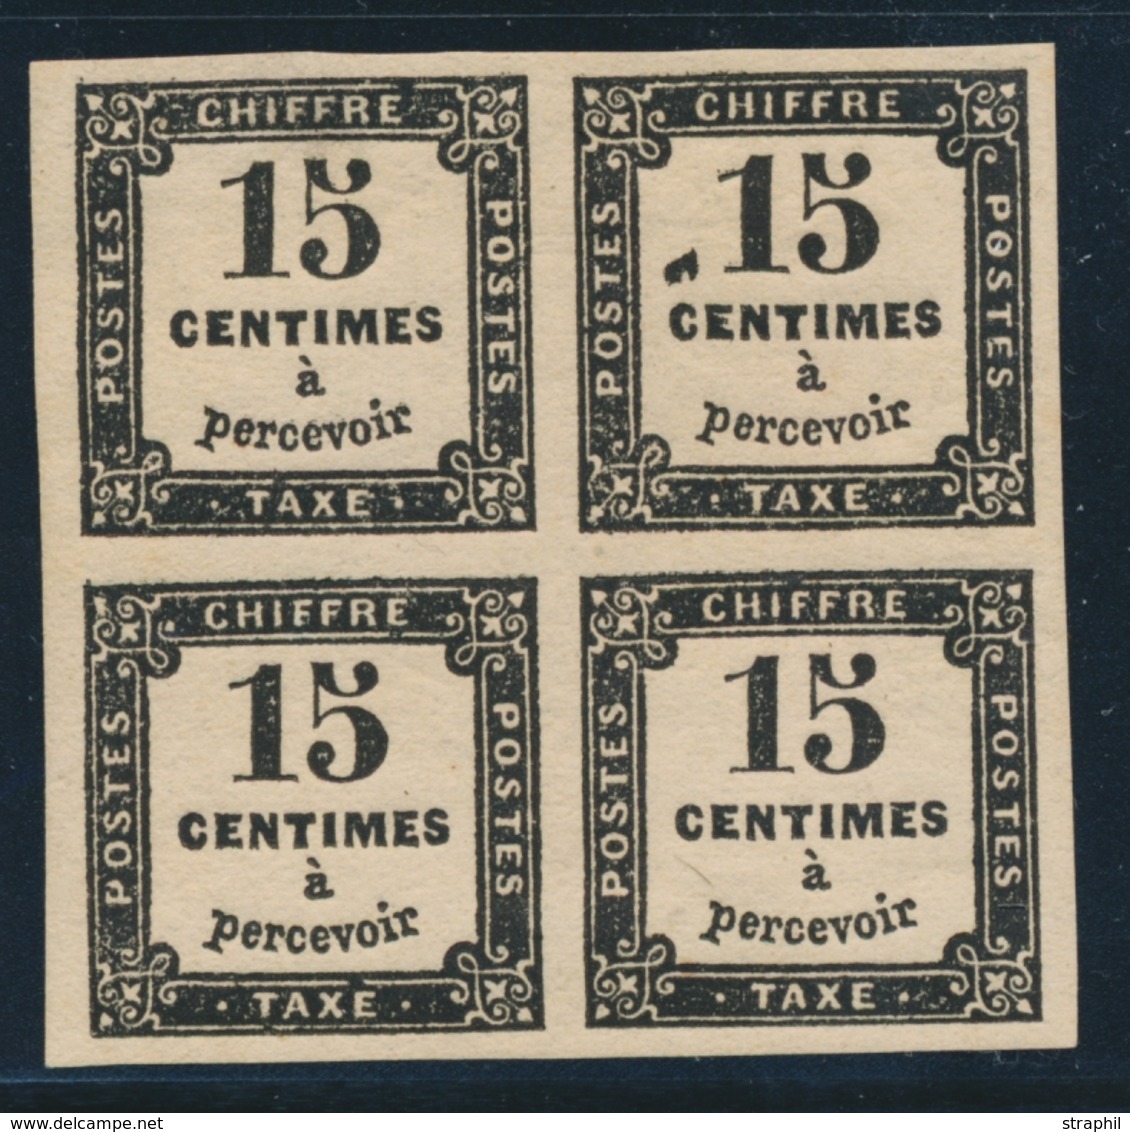 * N°3 - 15c Noir - Bloc De 4 - Variété Tâche Noire S/1 Ex - TB - 1859-1959 Mint/hinged